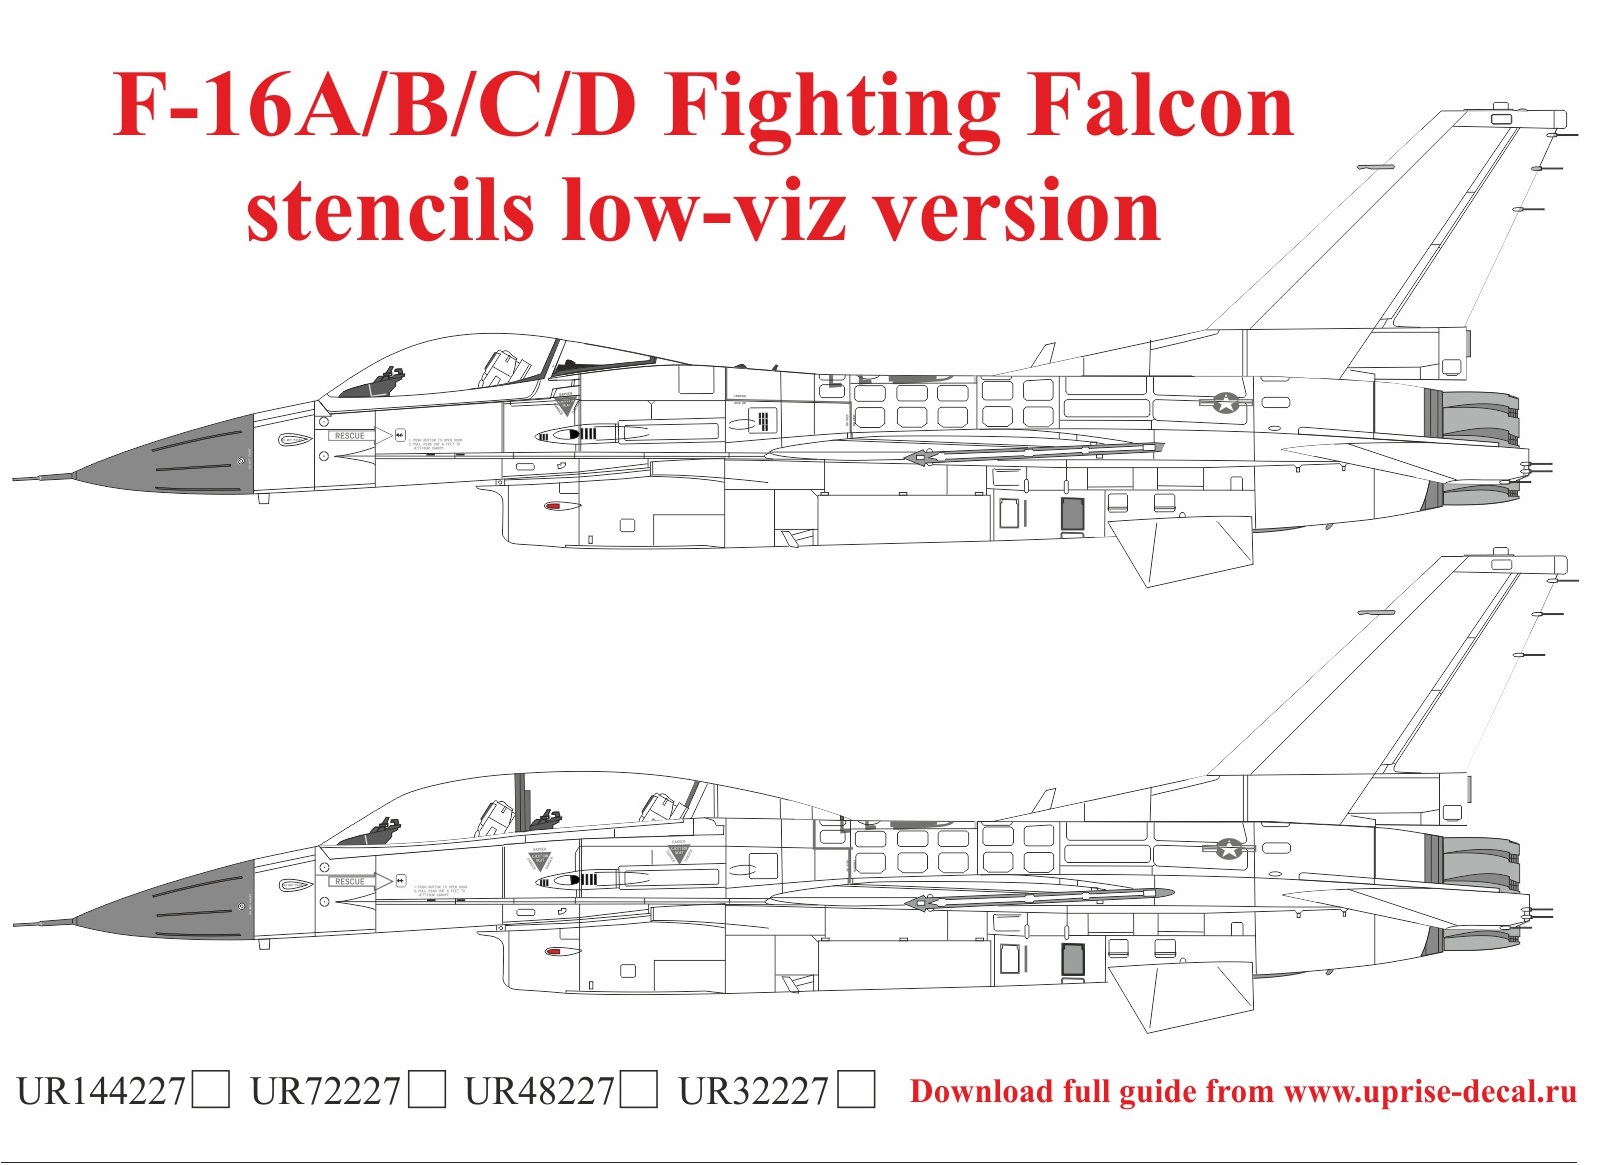 UR48227 декали F-16A/B/C/D Fighting Falcon stencils low-viz version  (1:48)